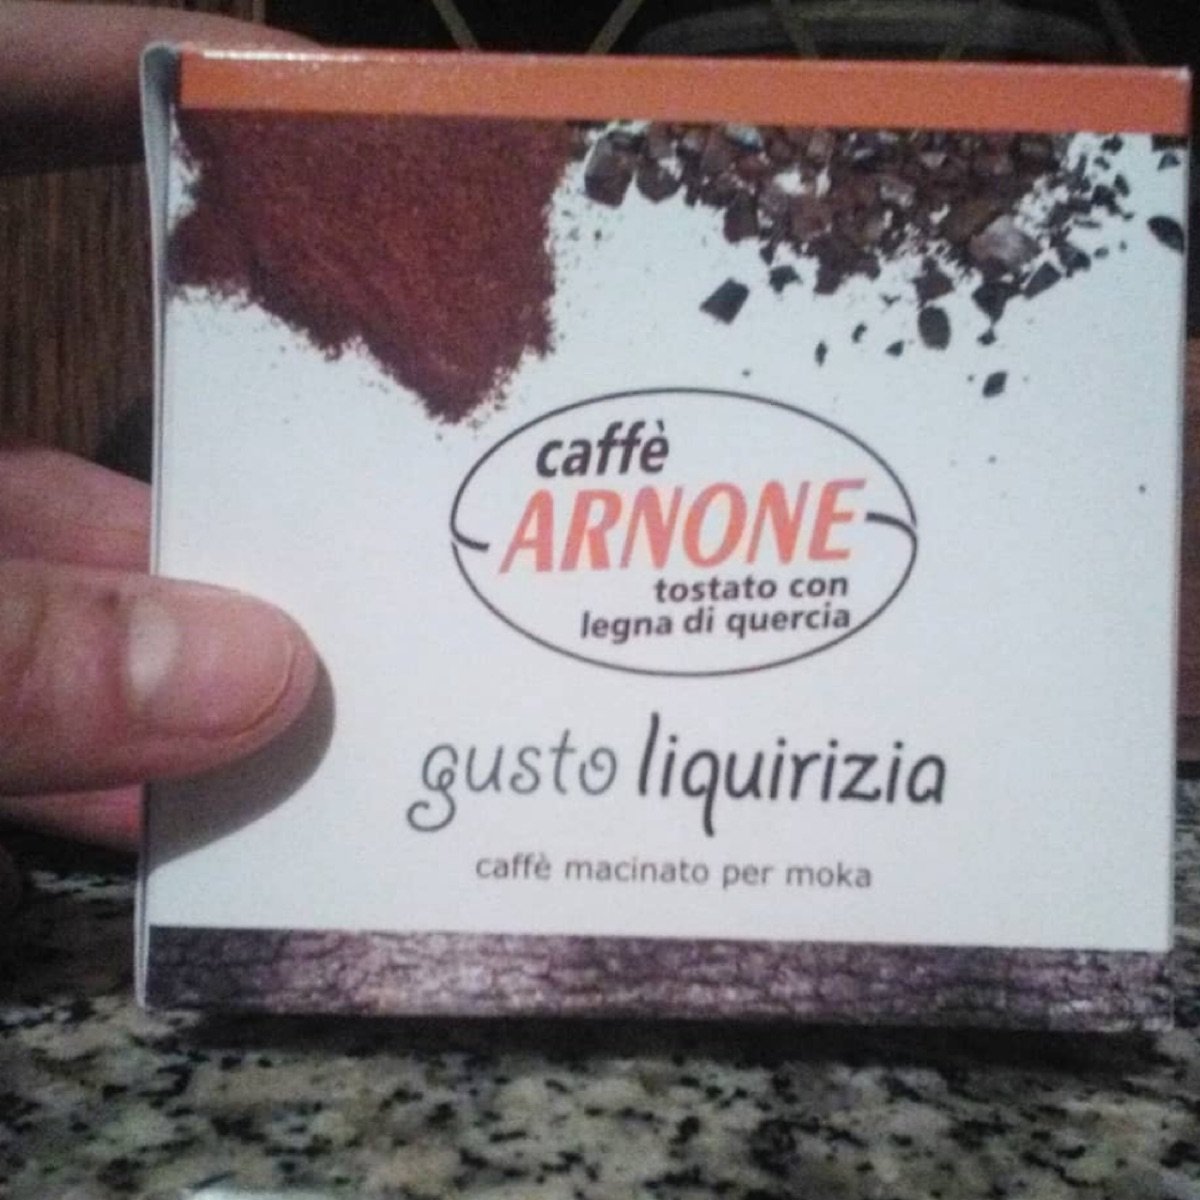 caffè arnone caffè macinato per moka gusto liquirizia Reviews